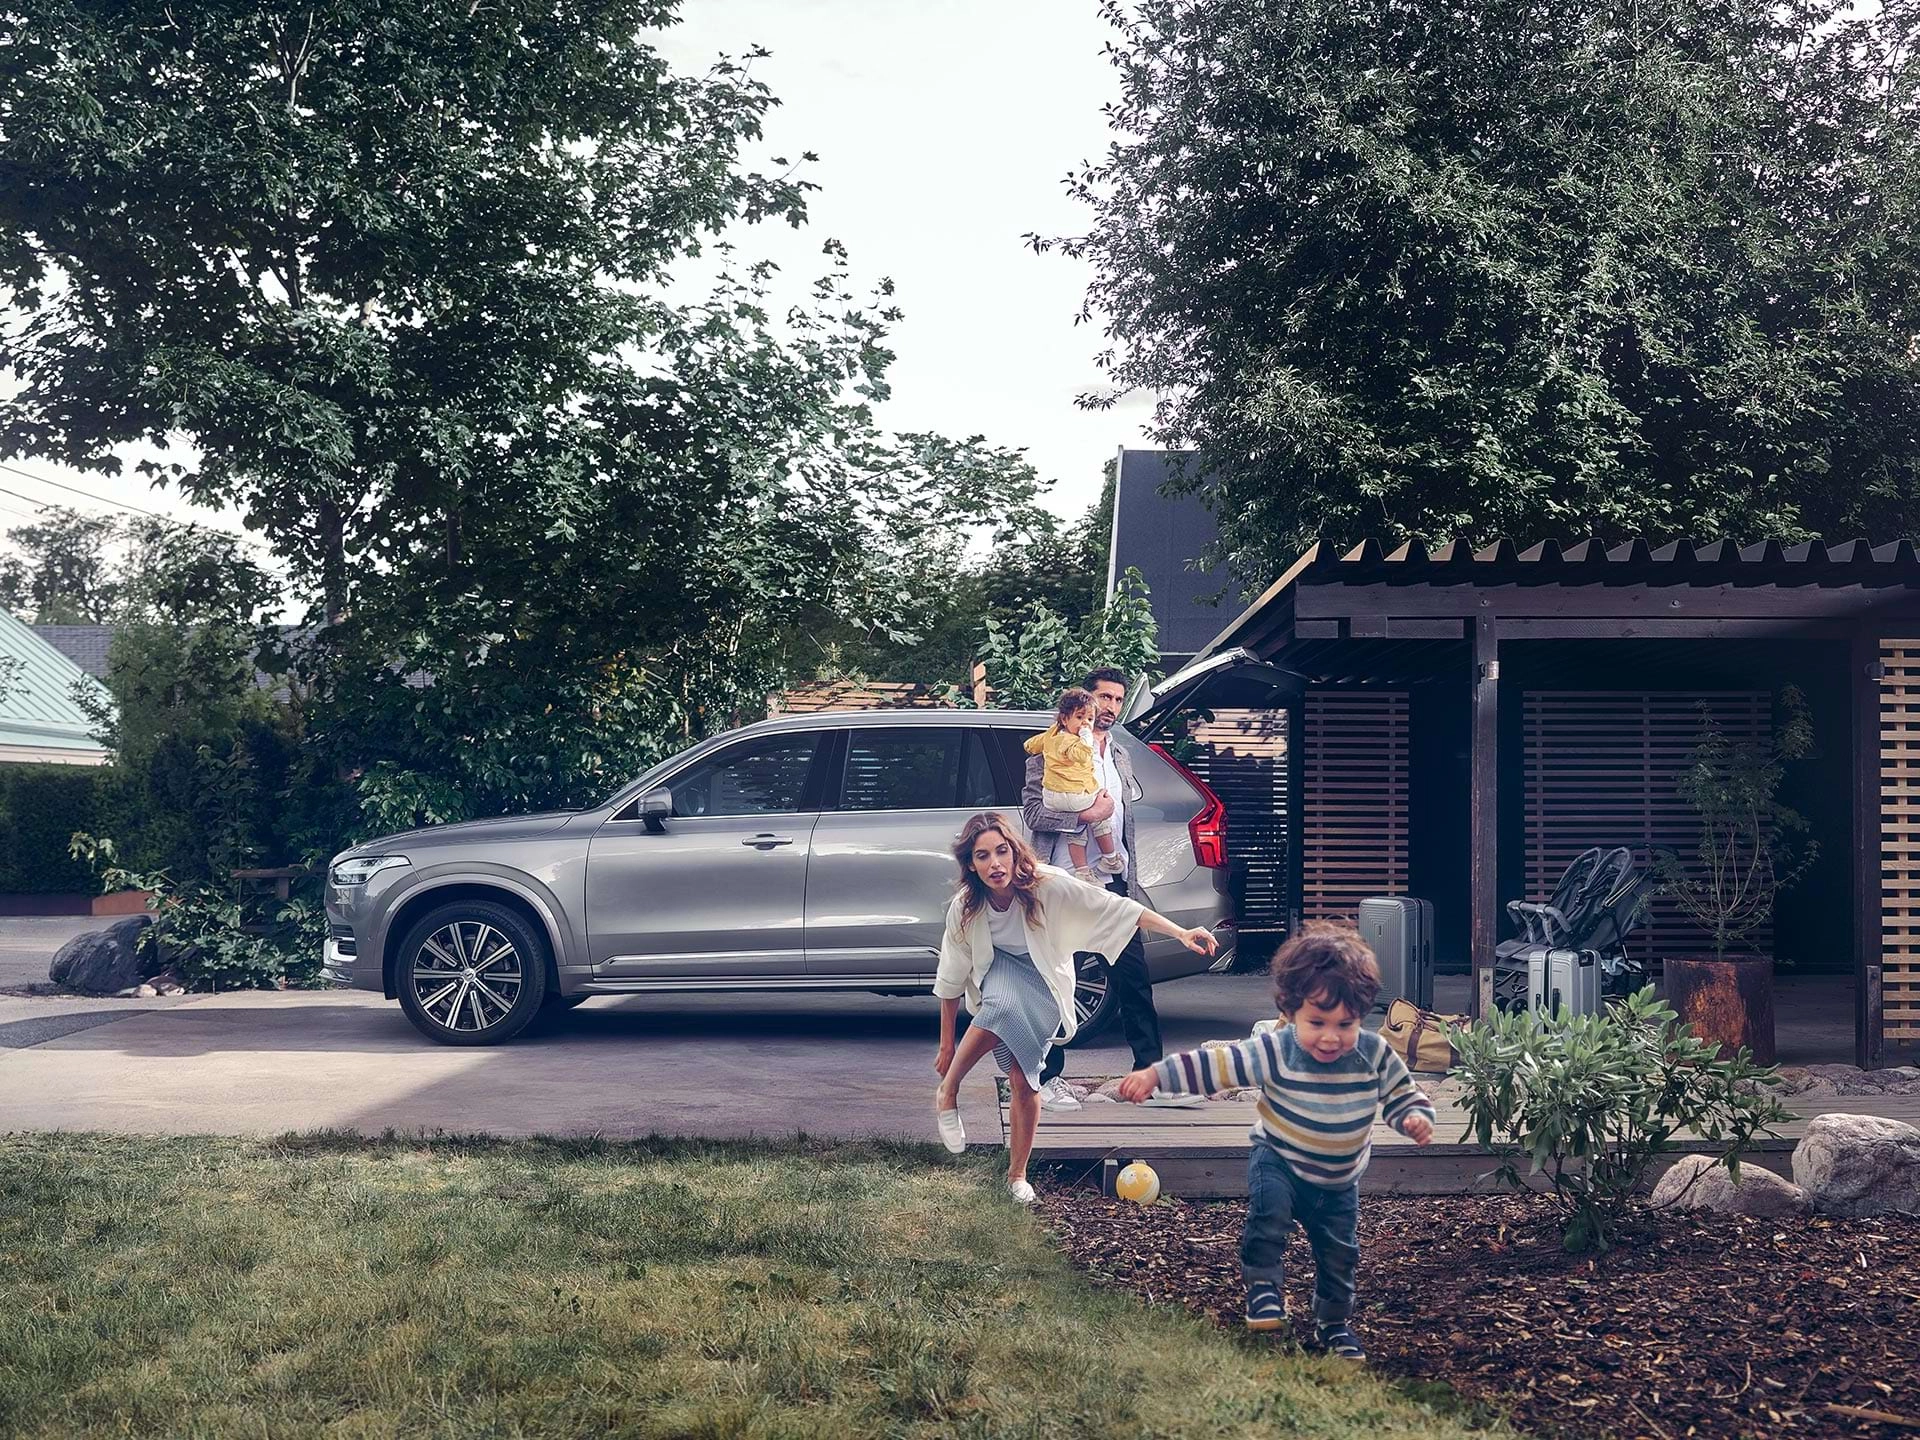 A kertes házas negyedben lakó család épp kirándulásra készül a Volvo SUV-val, miközben a gyermek átrohan az udvaron, édesanyja pedig fut utána.